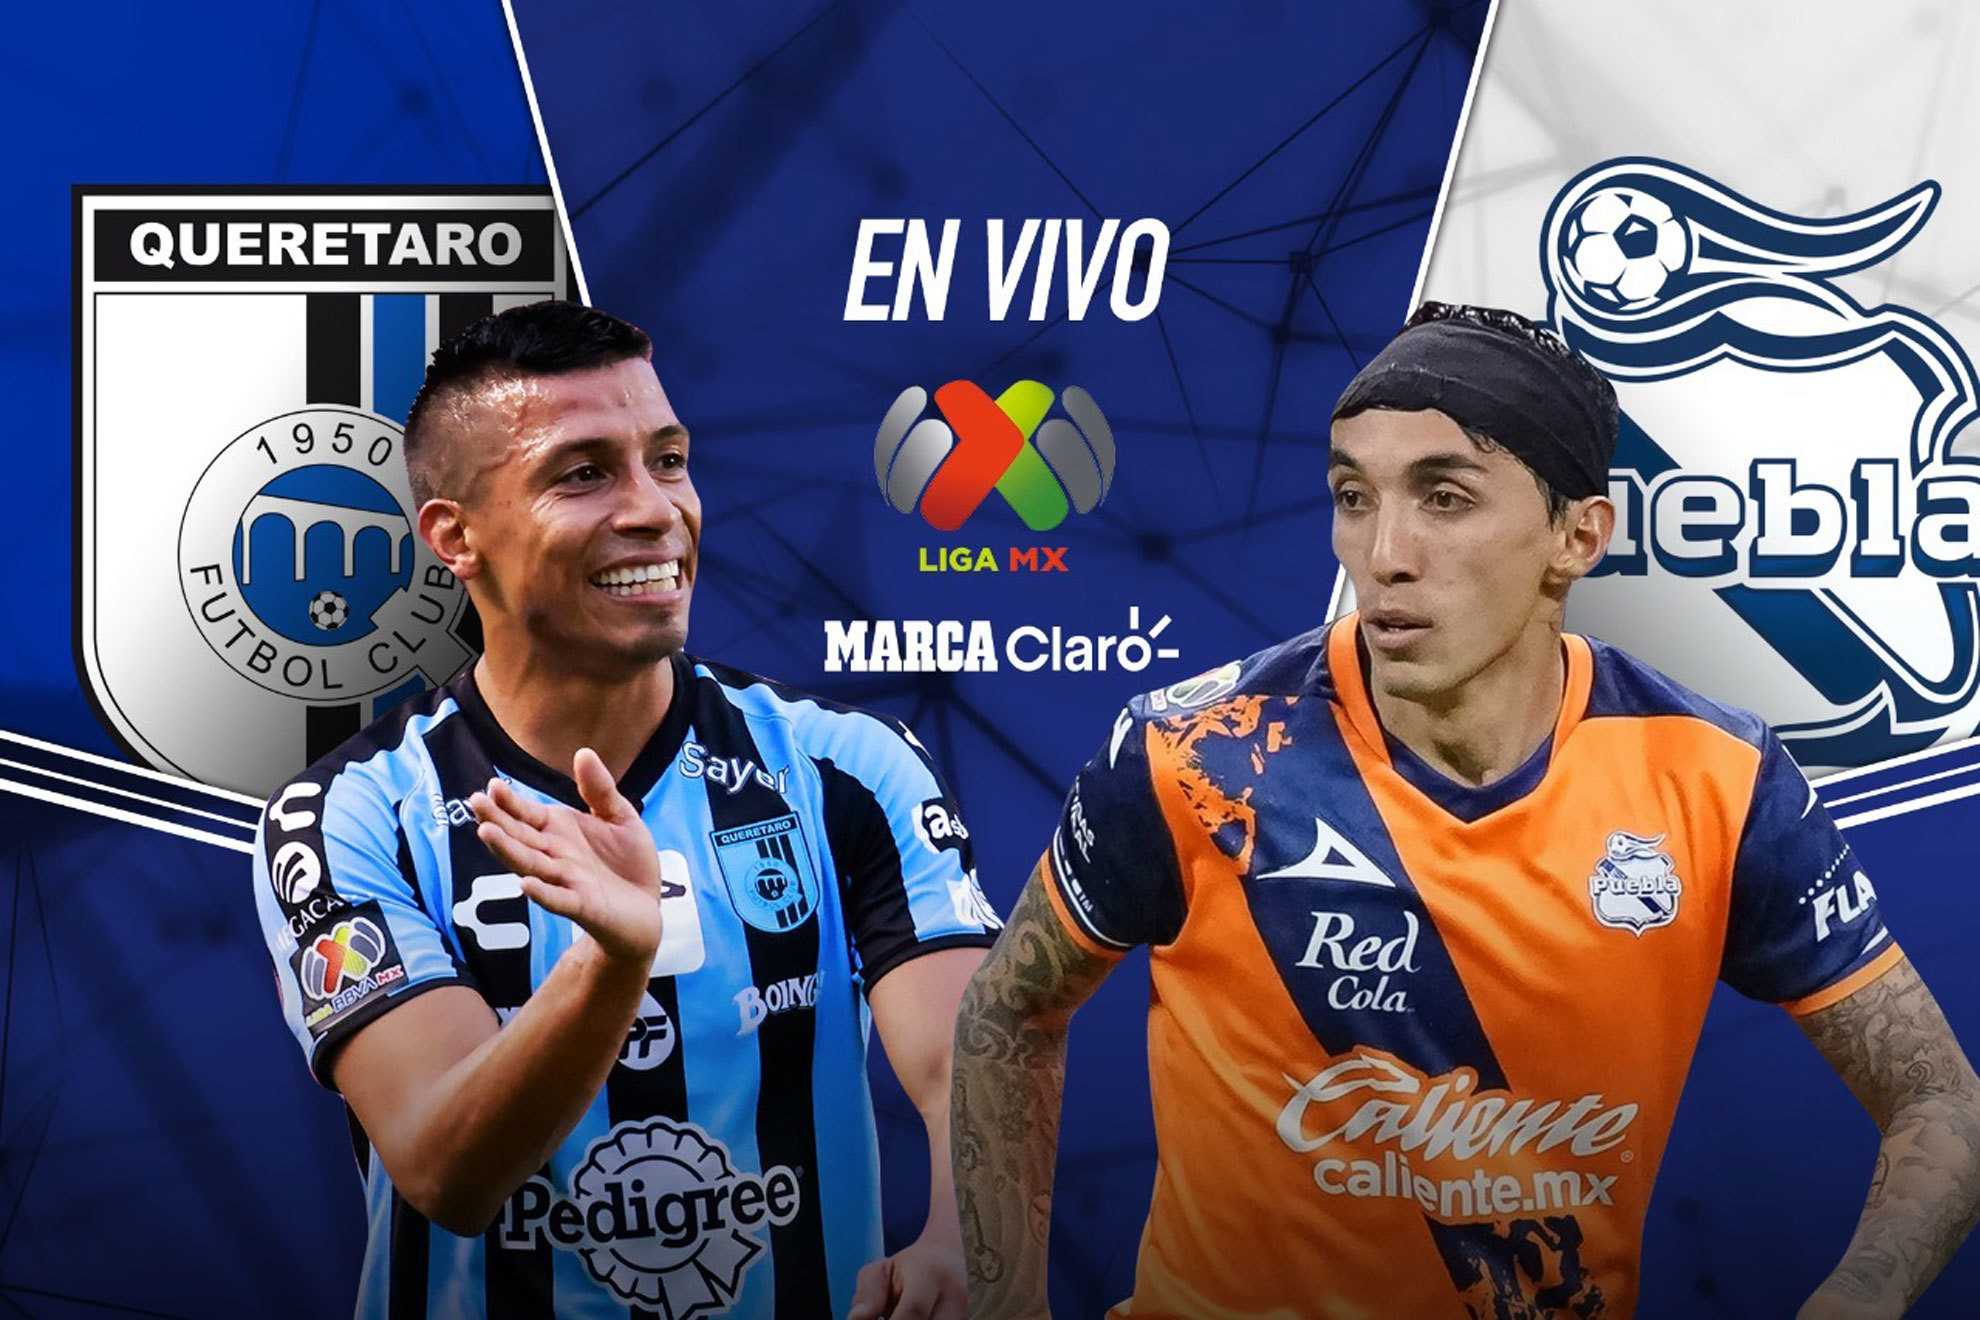 Querétaro vs Puebla, en vivo minuto a minuto el partido de la jornada 12 del Apertura 2022